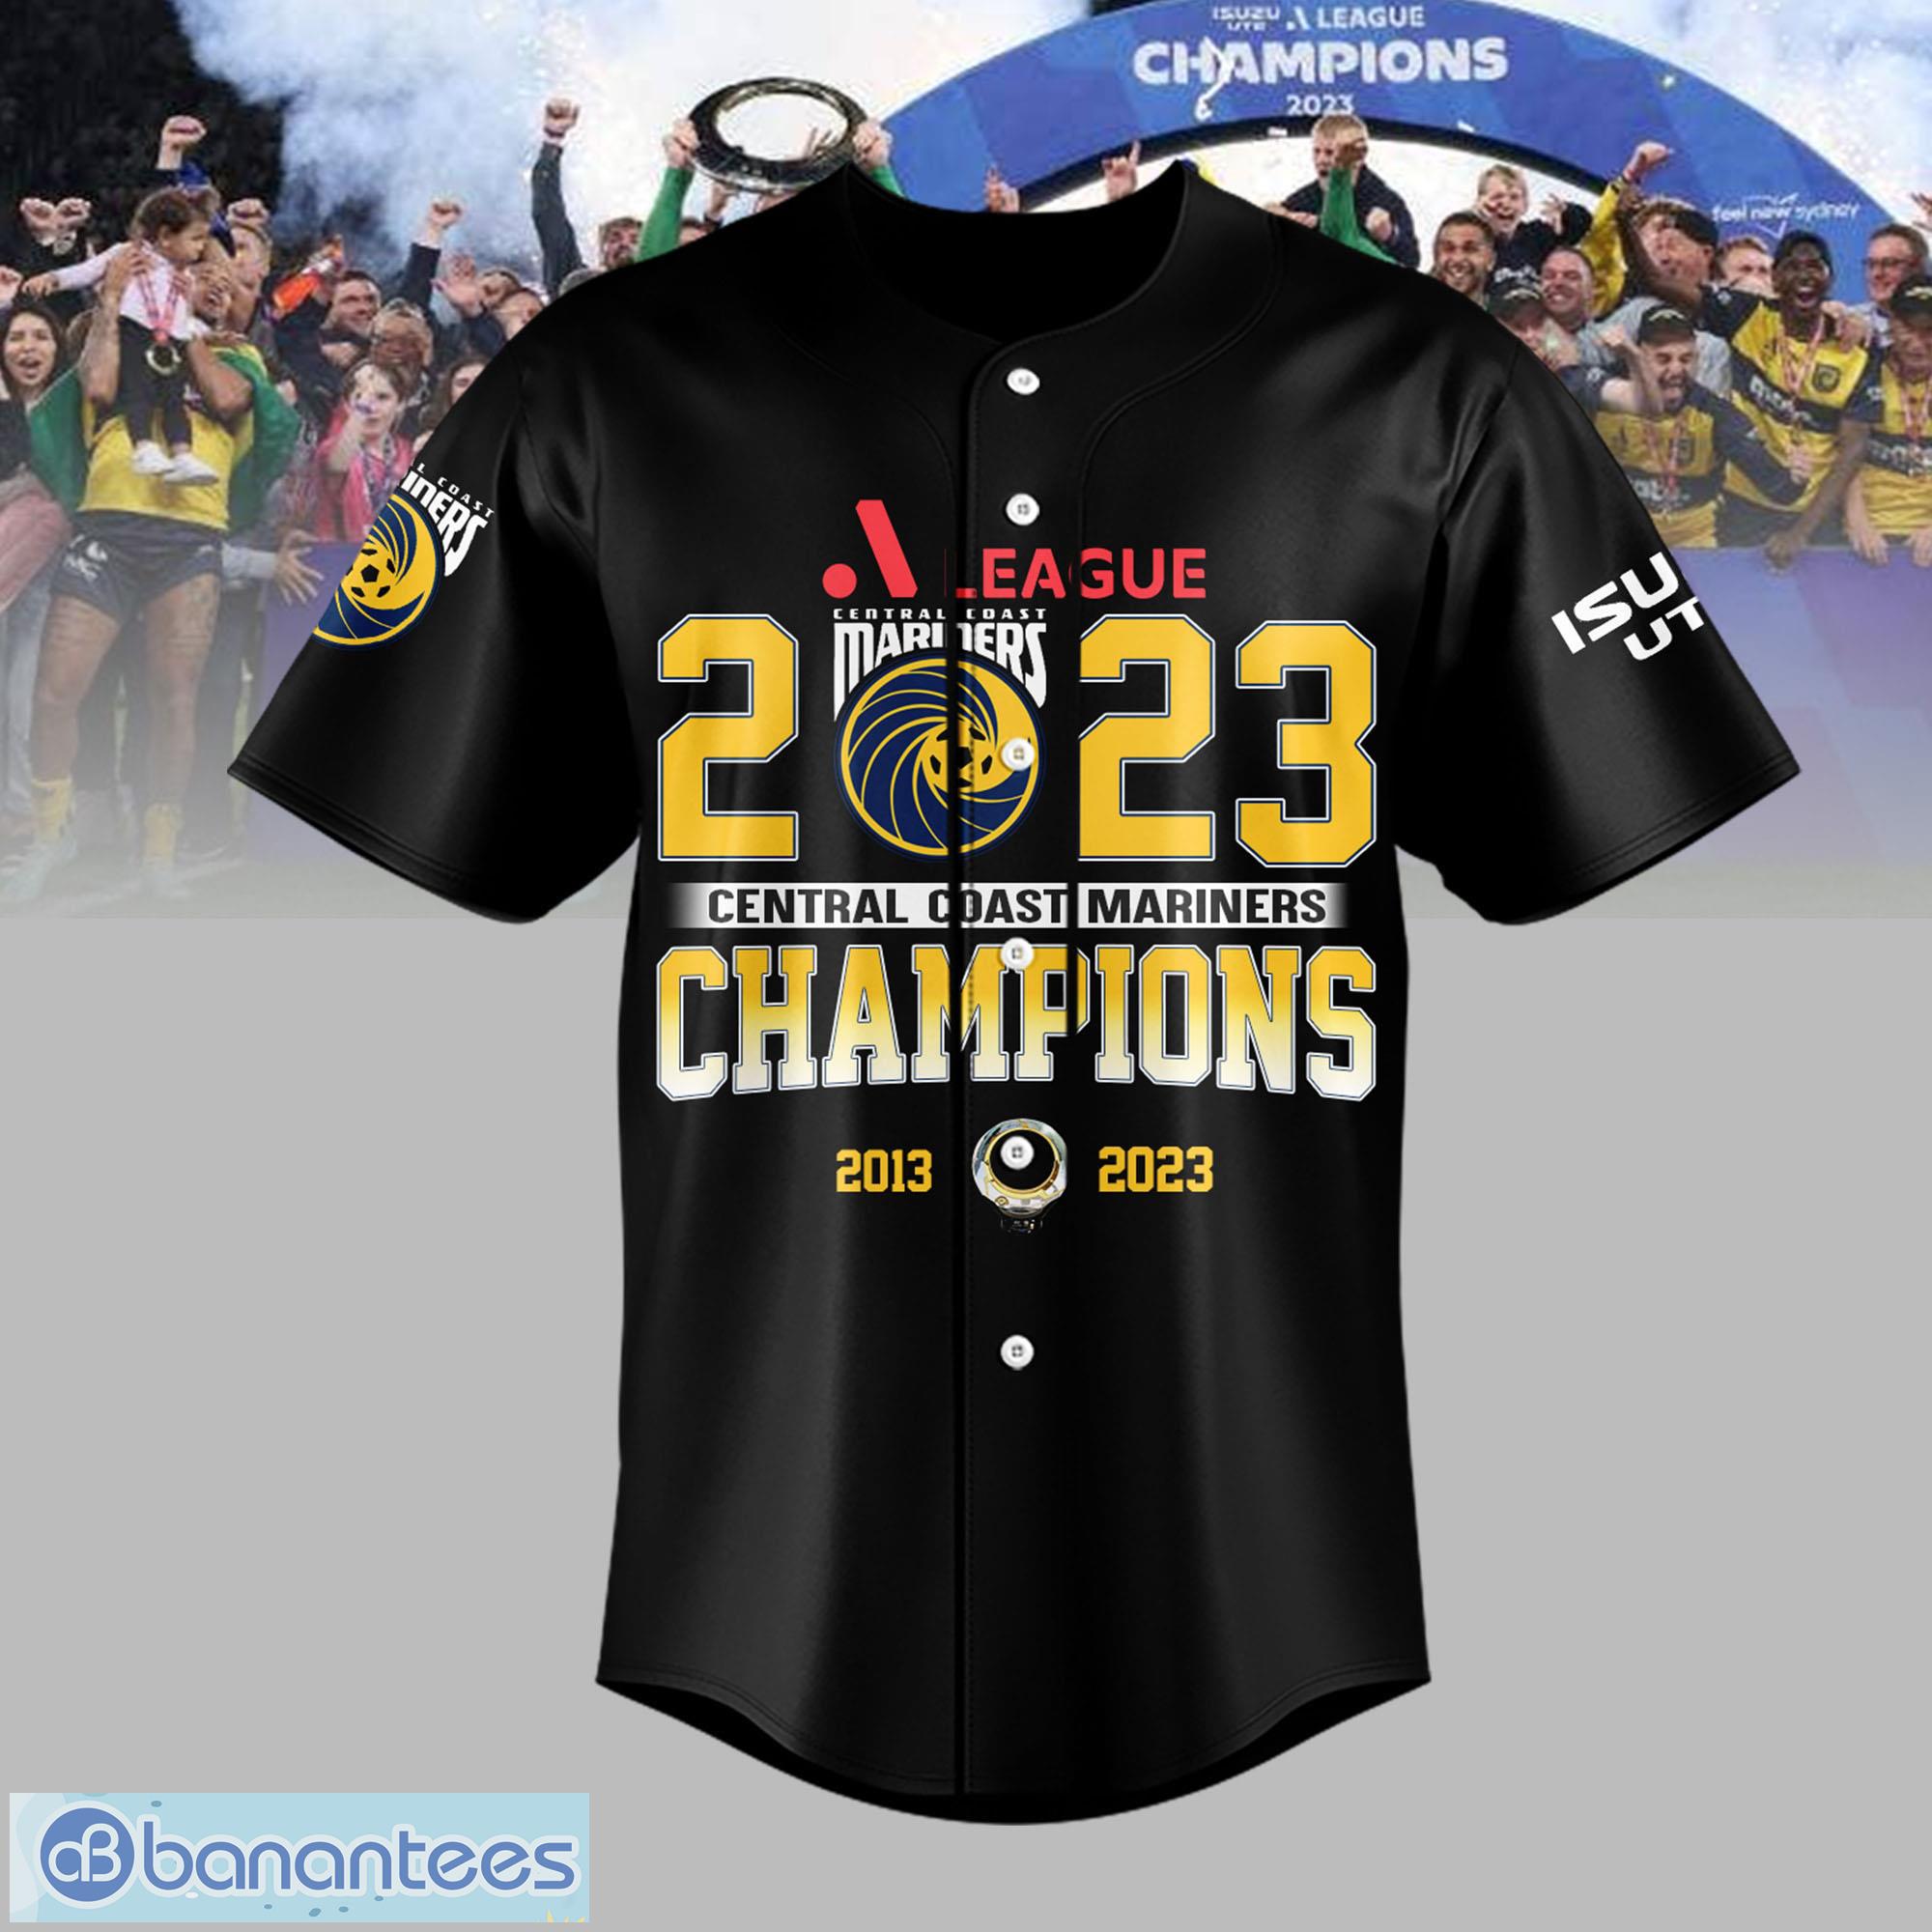 Central Coast Mariners Champions Champions Apparel Ghostly band presence  Baseball Jersey Shirt - Banantees